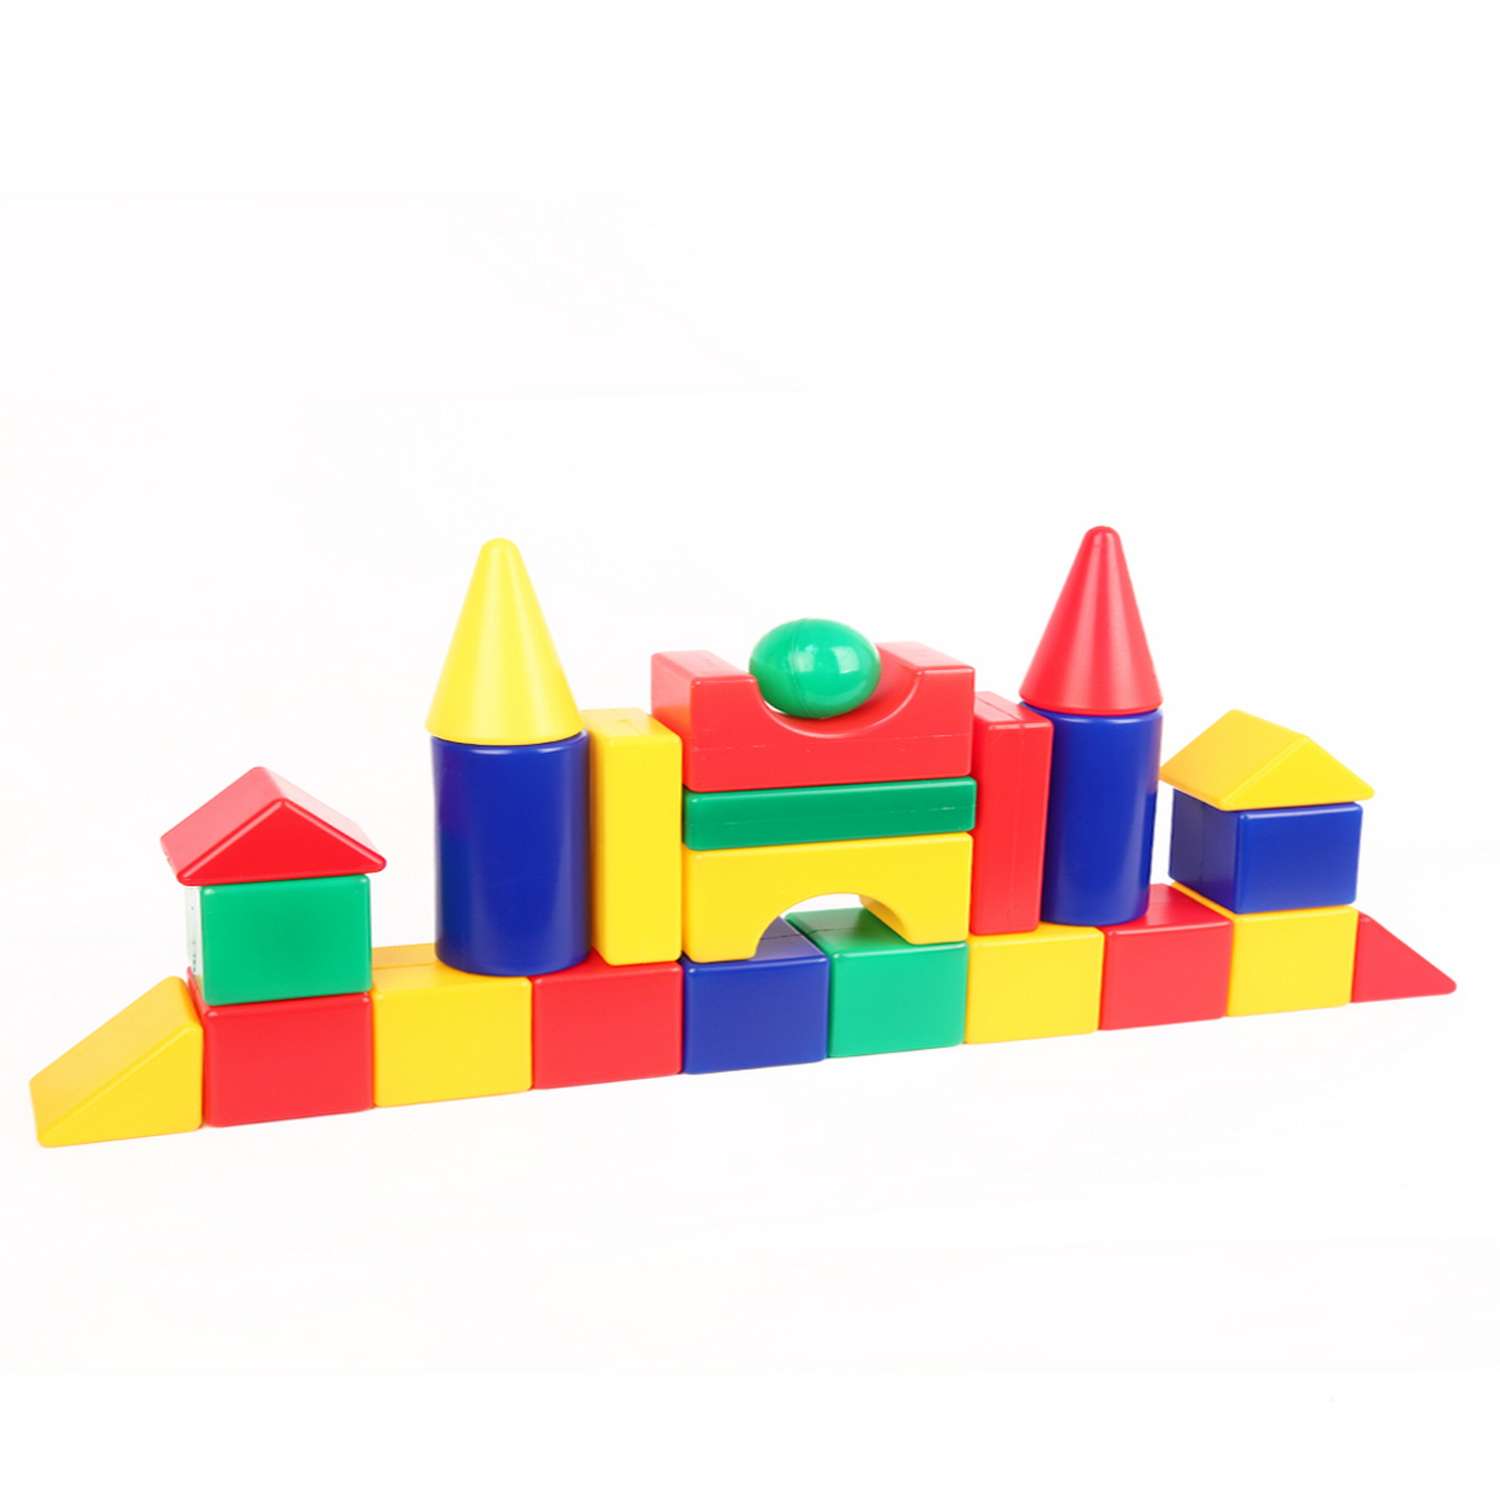 Конструктор детский кубики Green Plast Мой городок 24 детали развивающая игрушка - фото 4